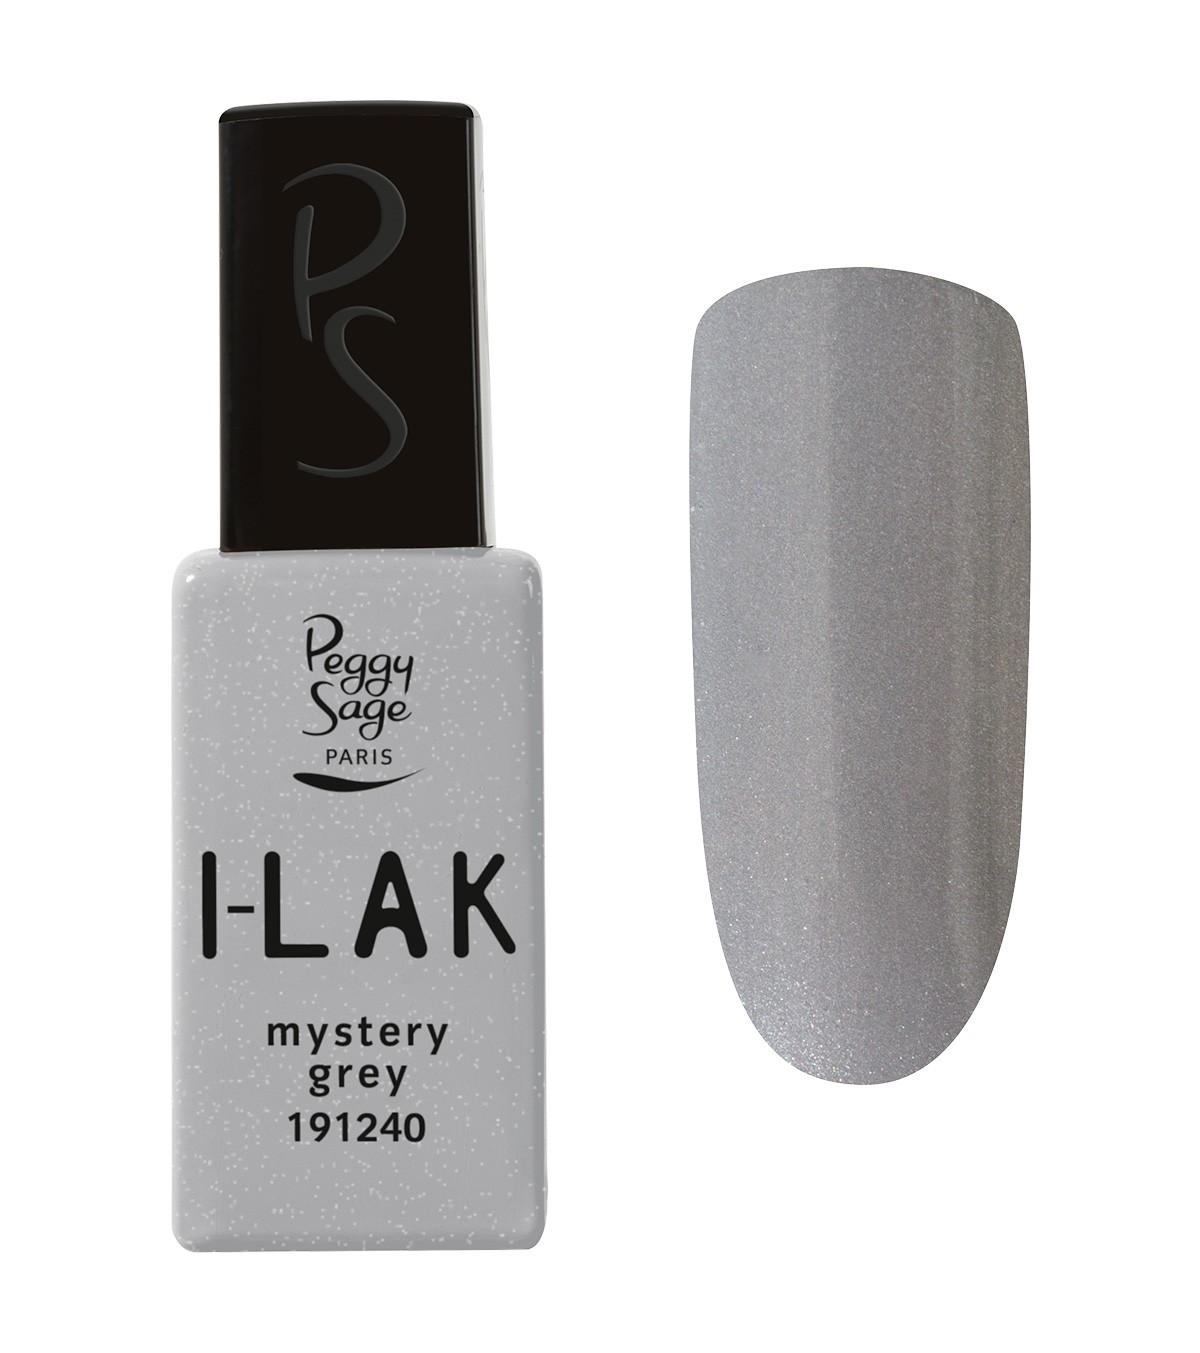 I-LAK Mystery grey